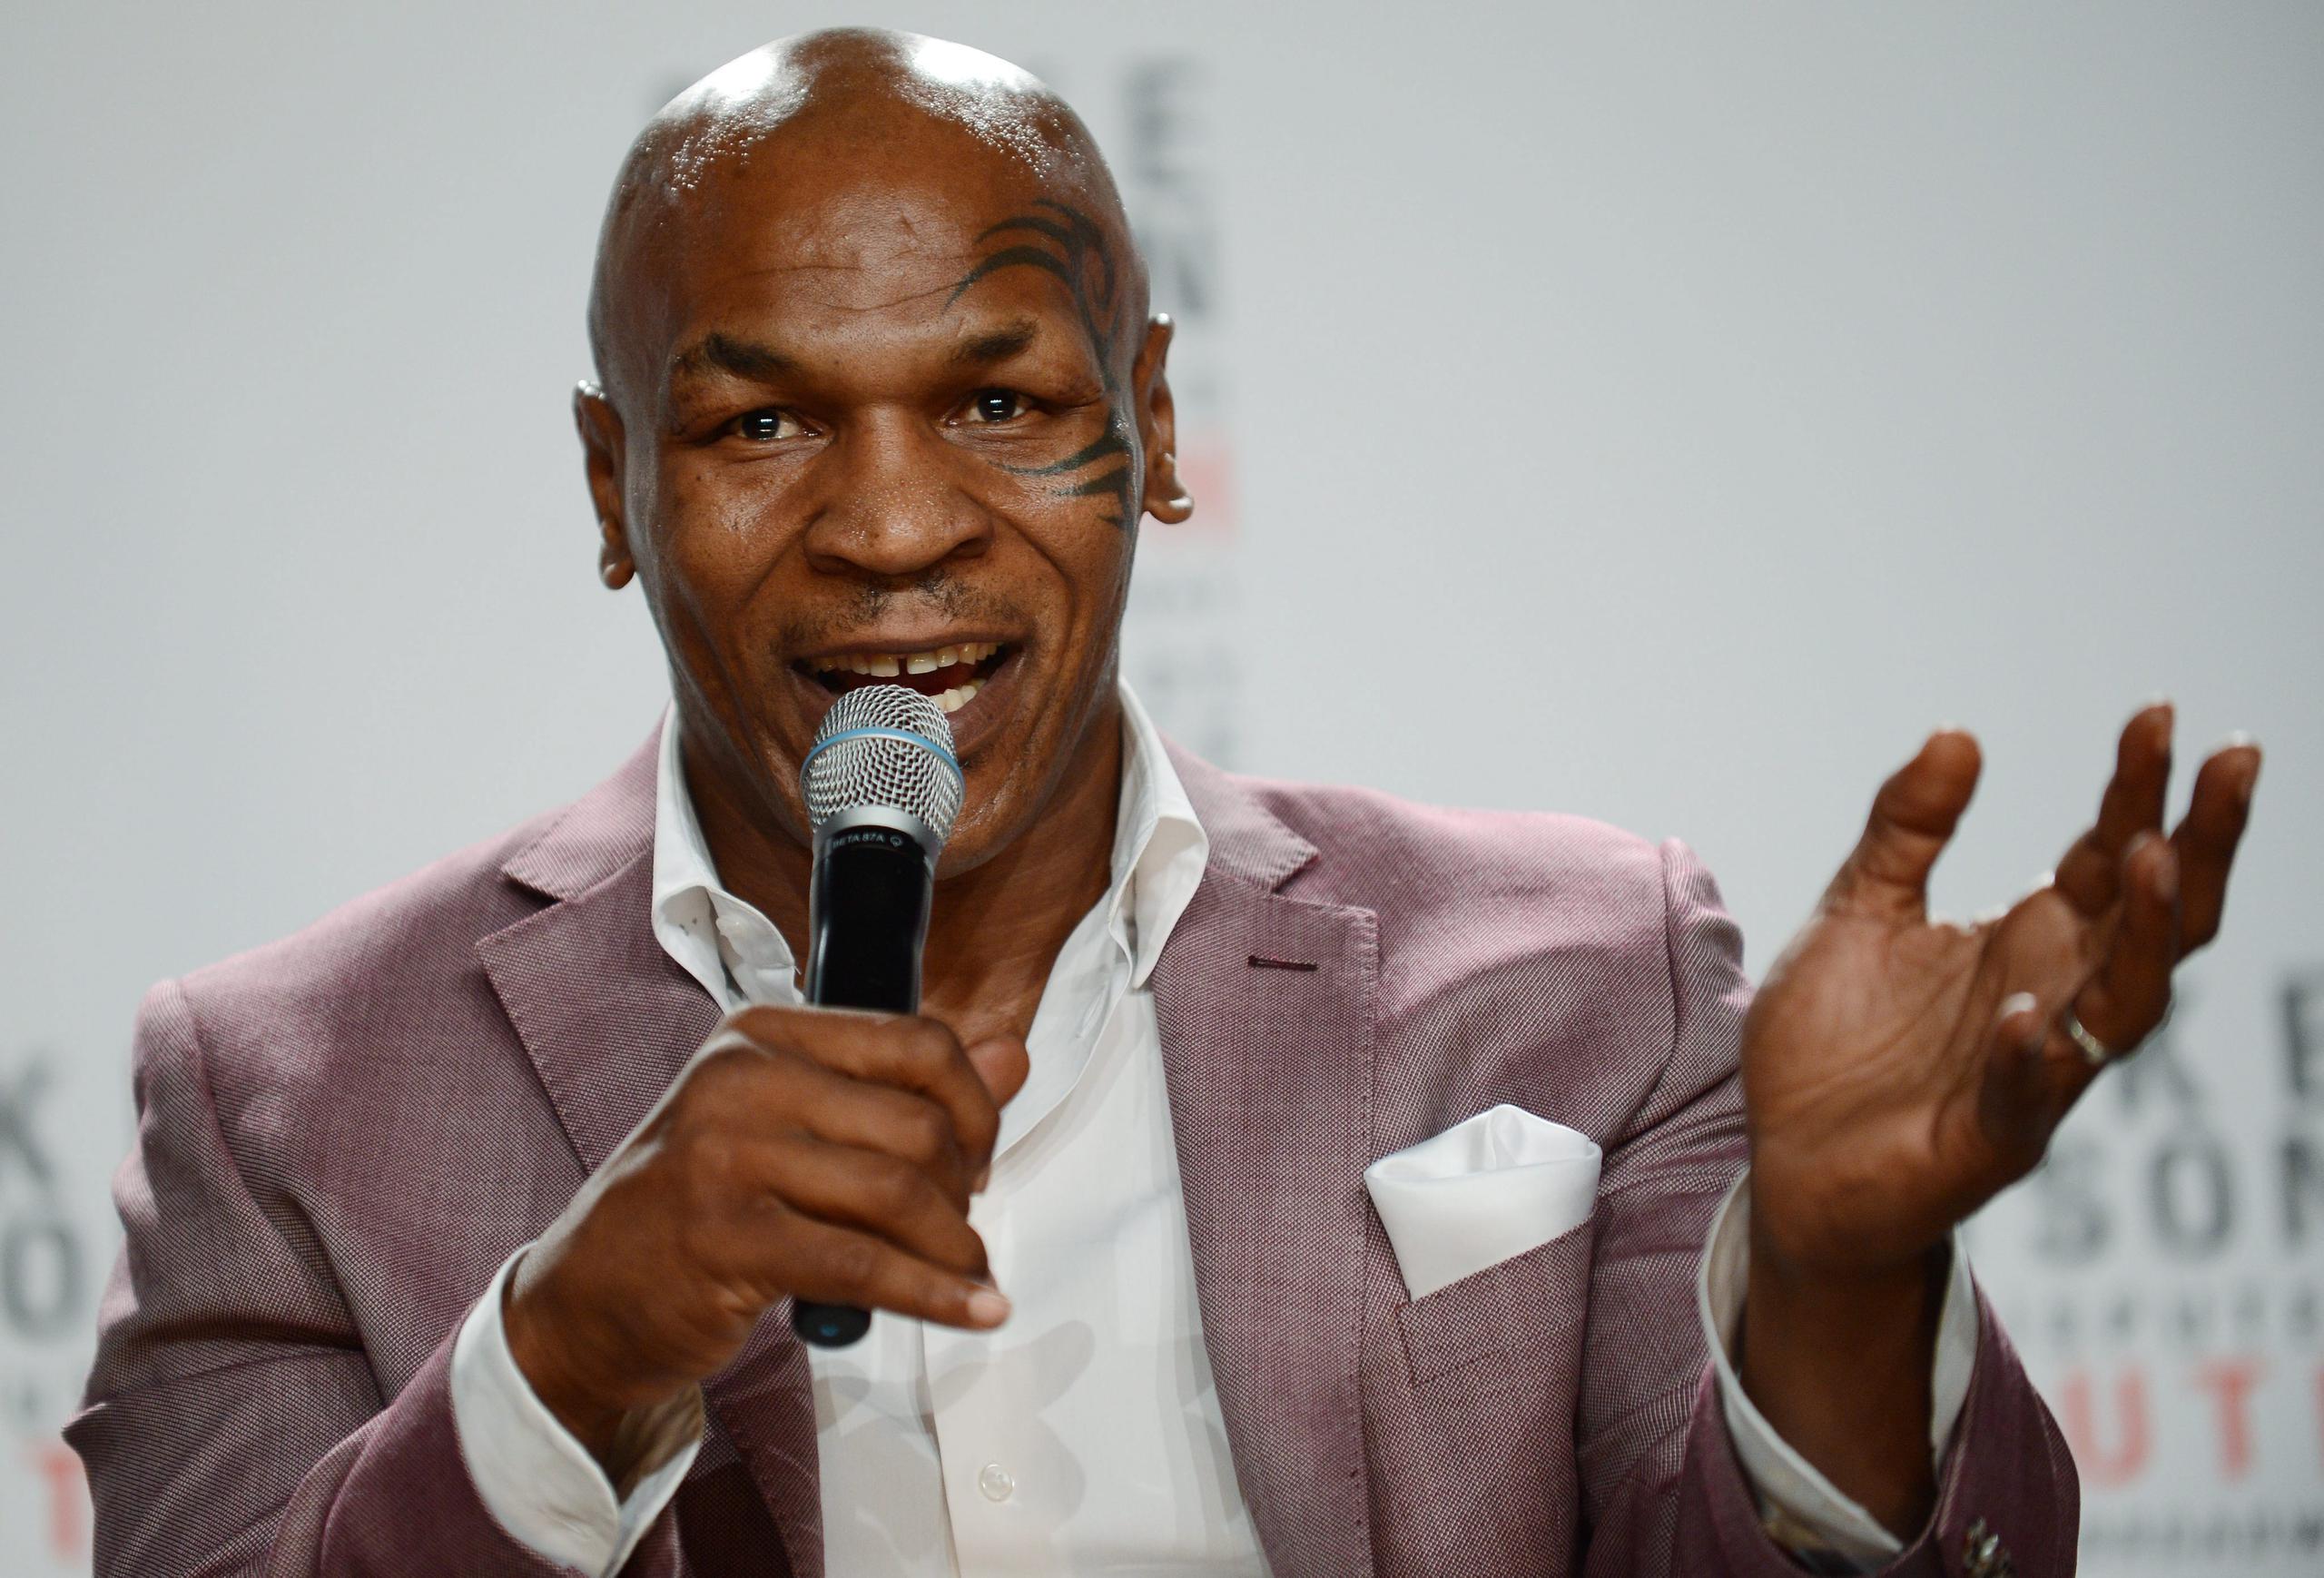 Mike Tyson lleva varios meses entrenando para lo que se especulaba era su potencial regreso al ring para una serie eventos caritativos.